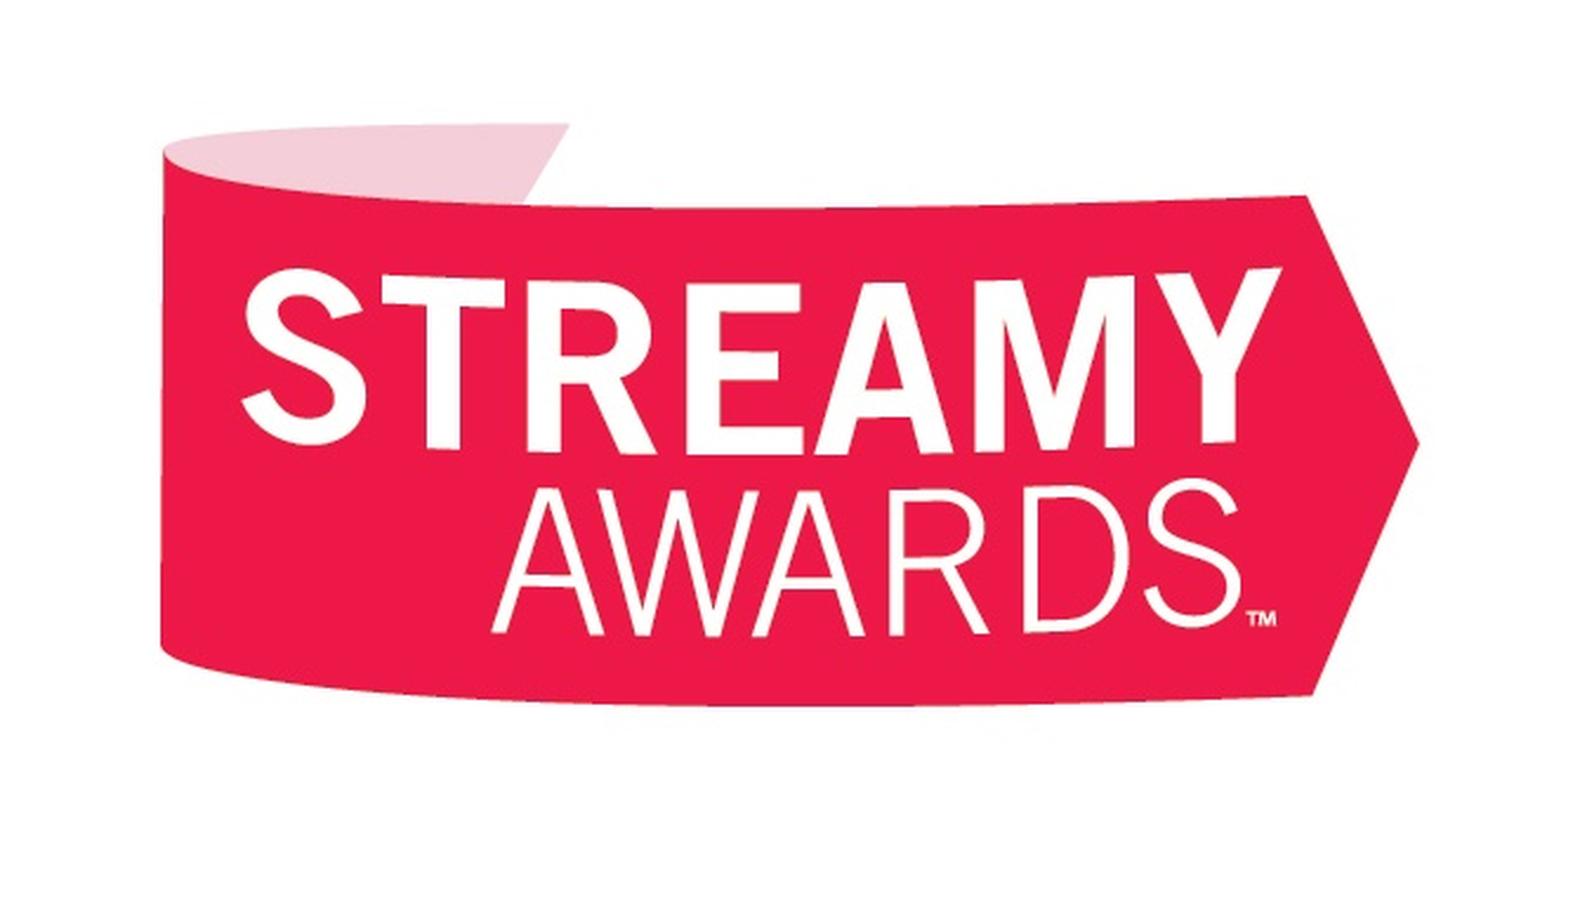 New prize. Stream Awards. Streamy. Add Awards logo. The Streamer Awards.